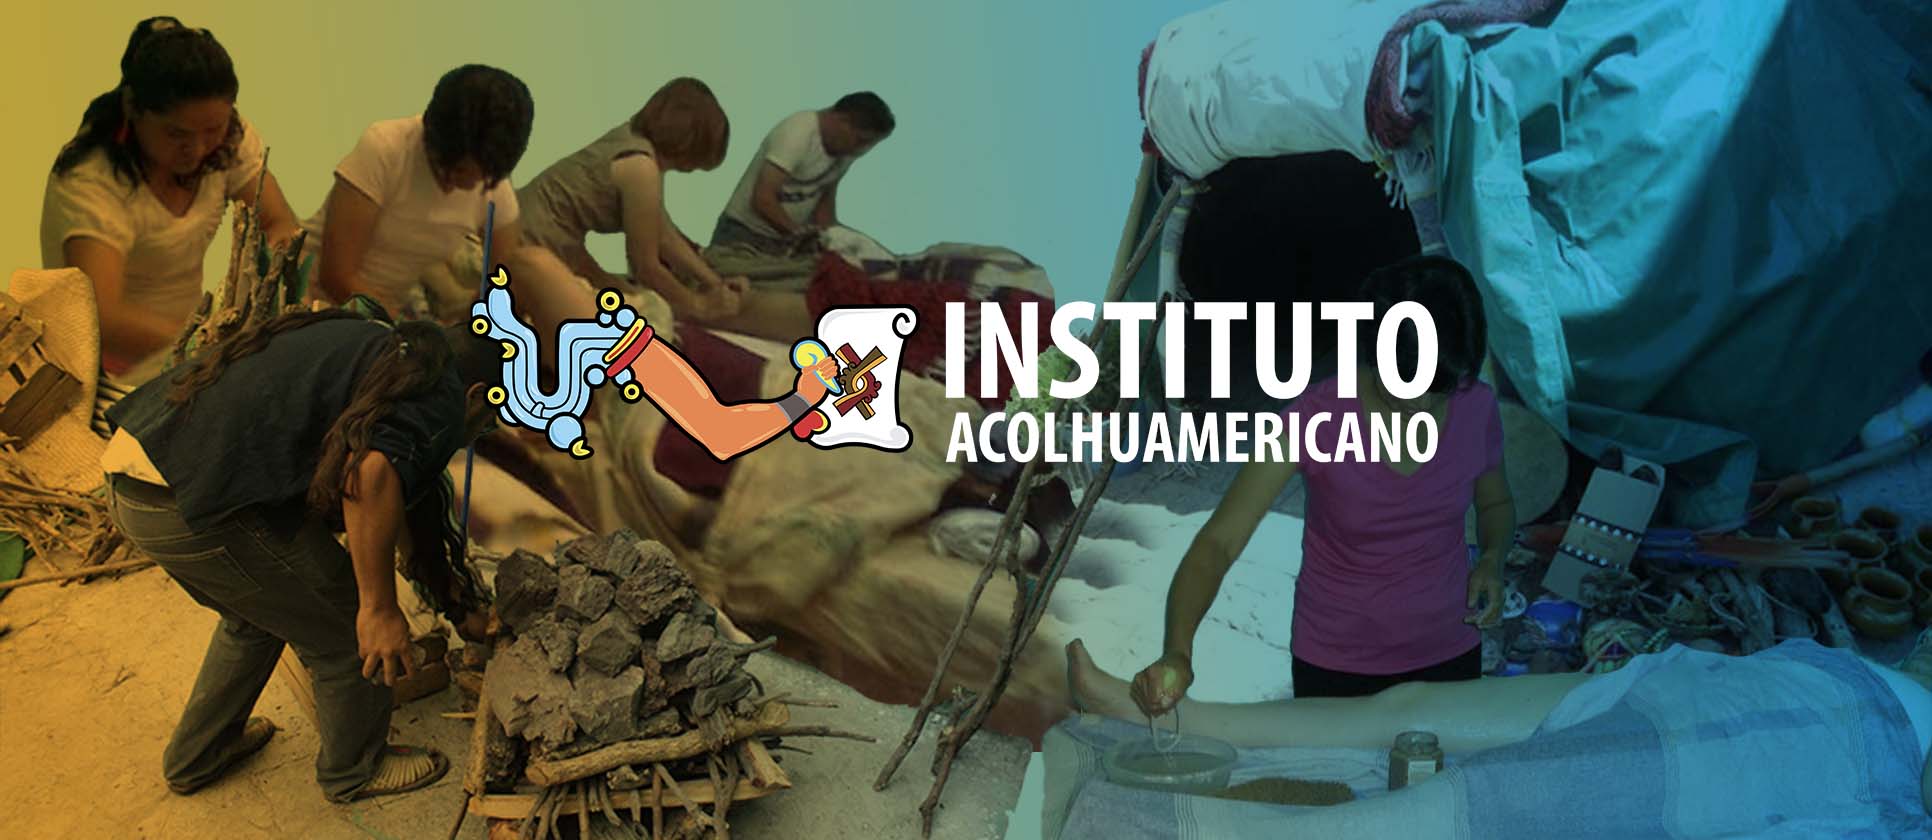 Instituto Acolhuamericano